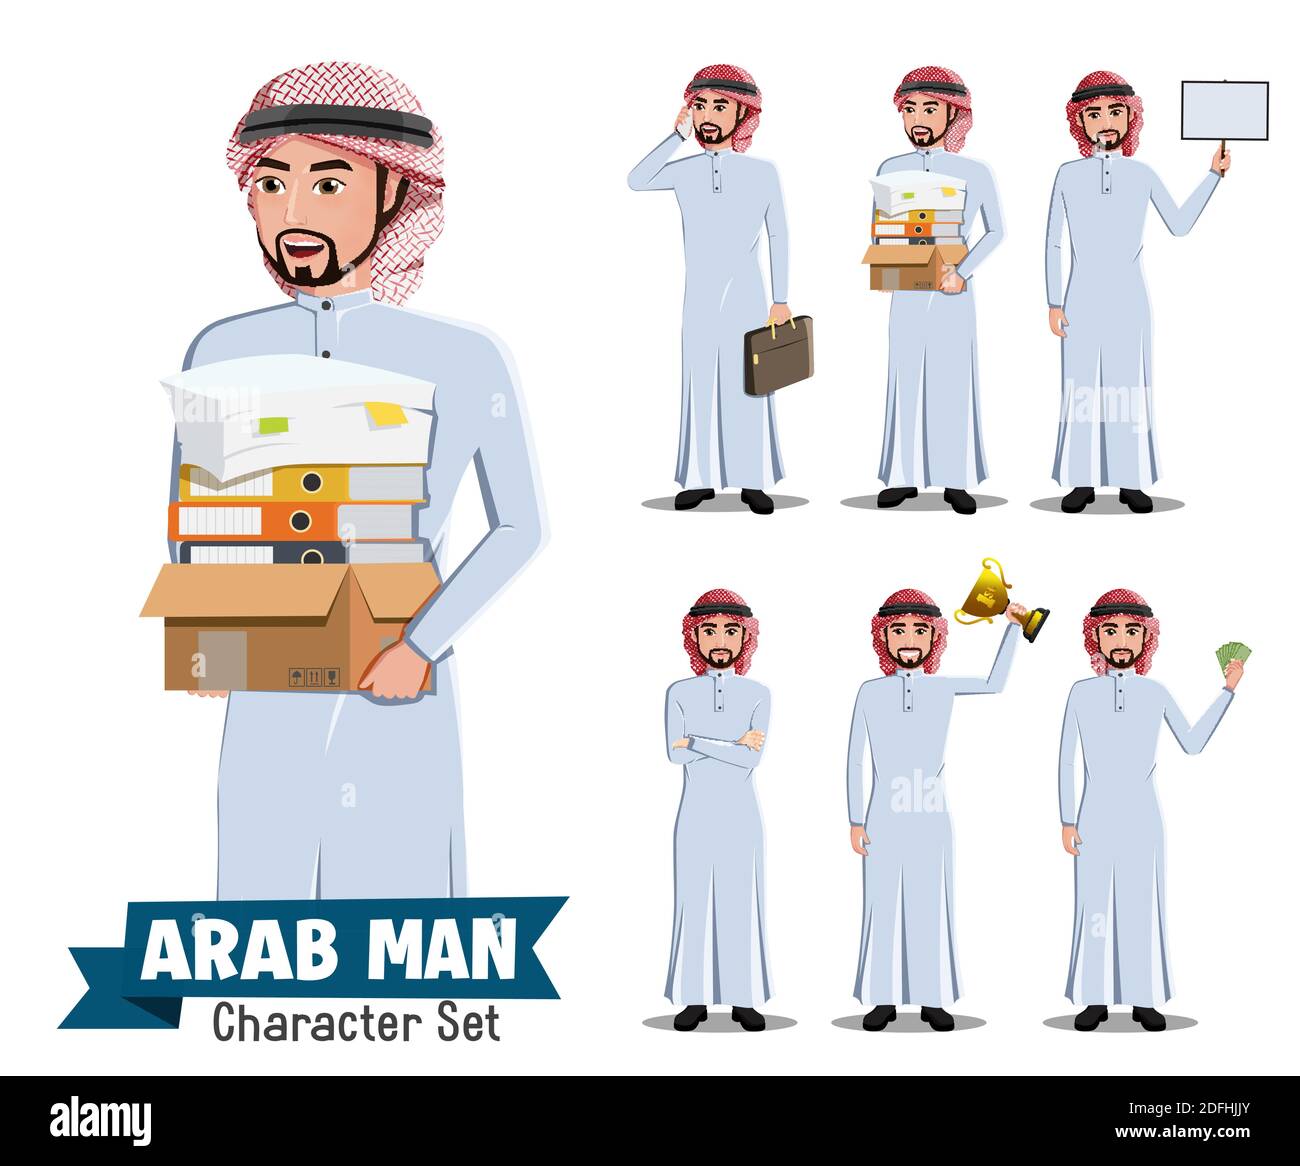 Arab man Mitarbeiter Vektor-Zeichensatz. Saudi arabian Büro männlichen Charakter Holding Box von Büchern für arabische Mitarbeiter Cartoon Collection Design. Stock Vektor